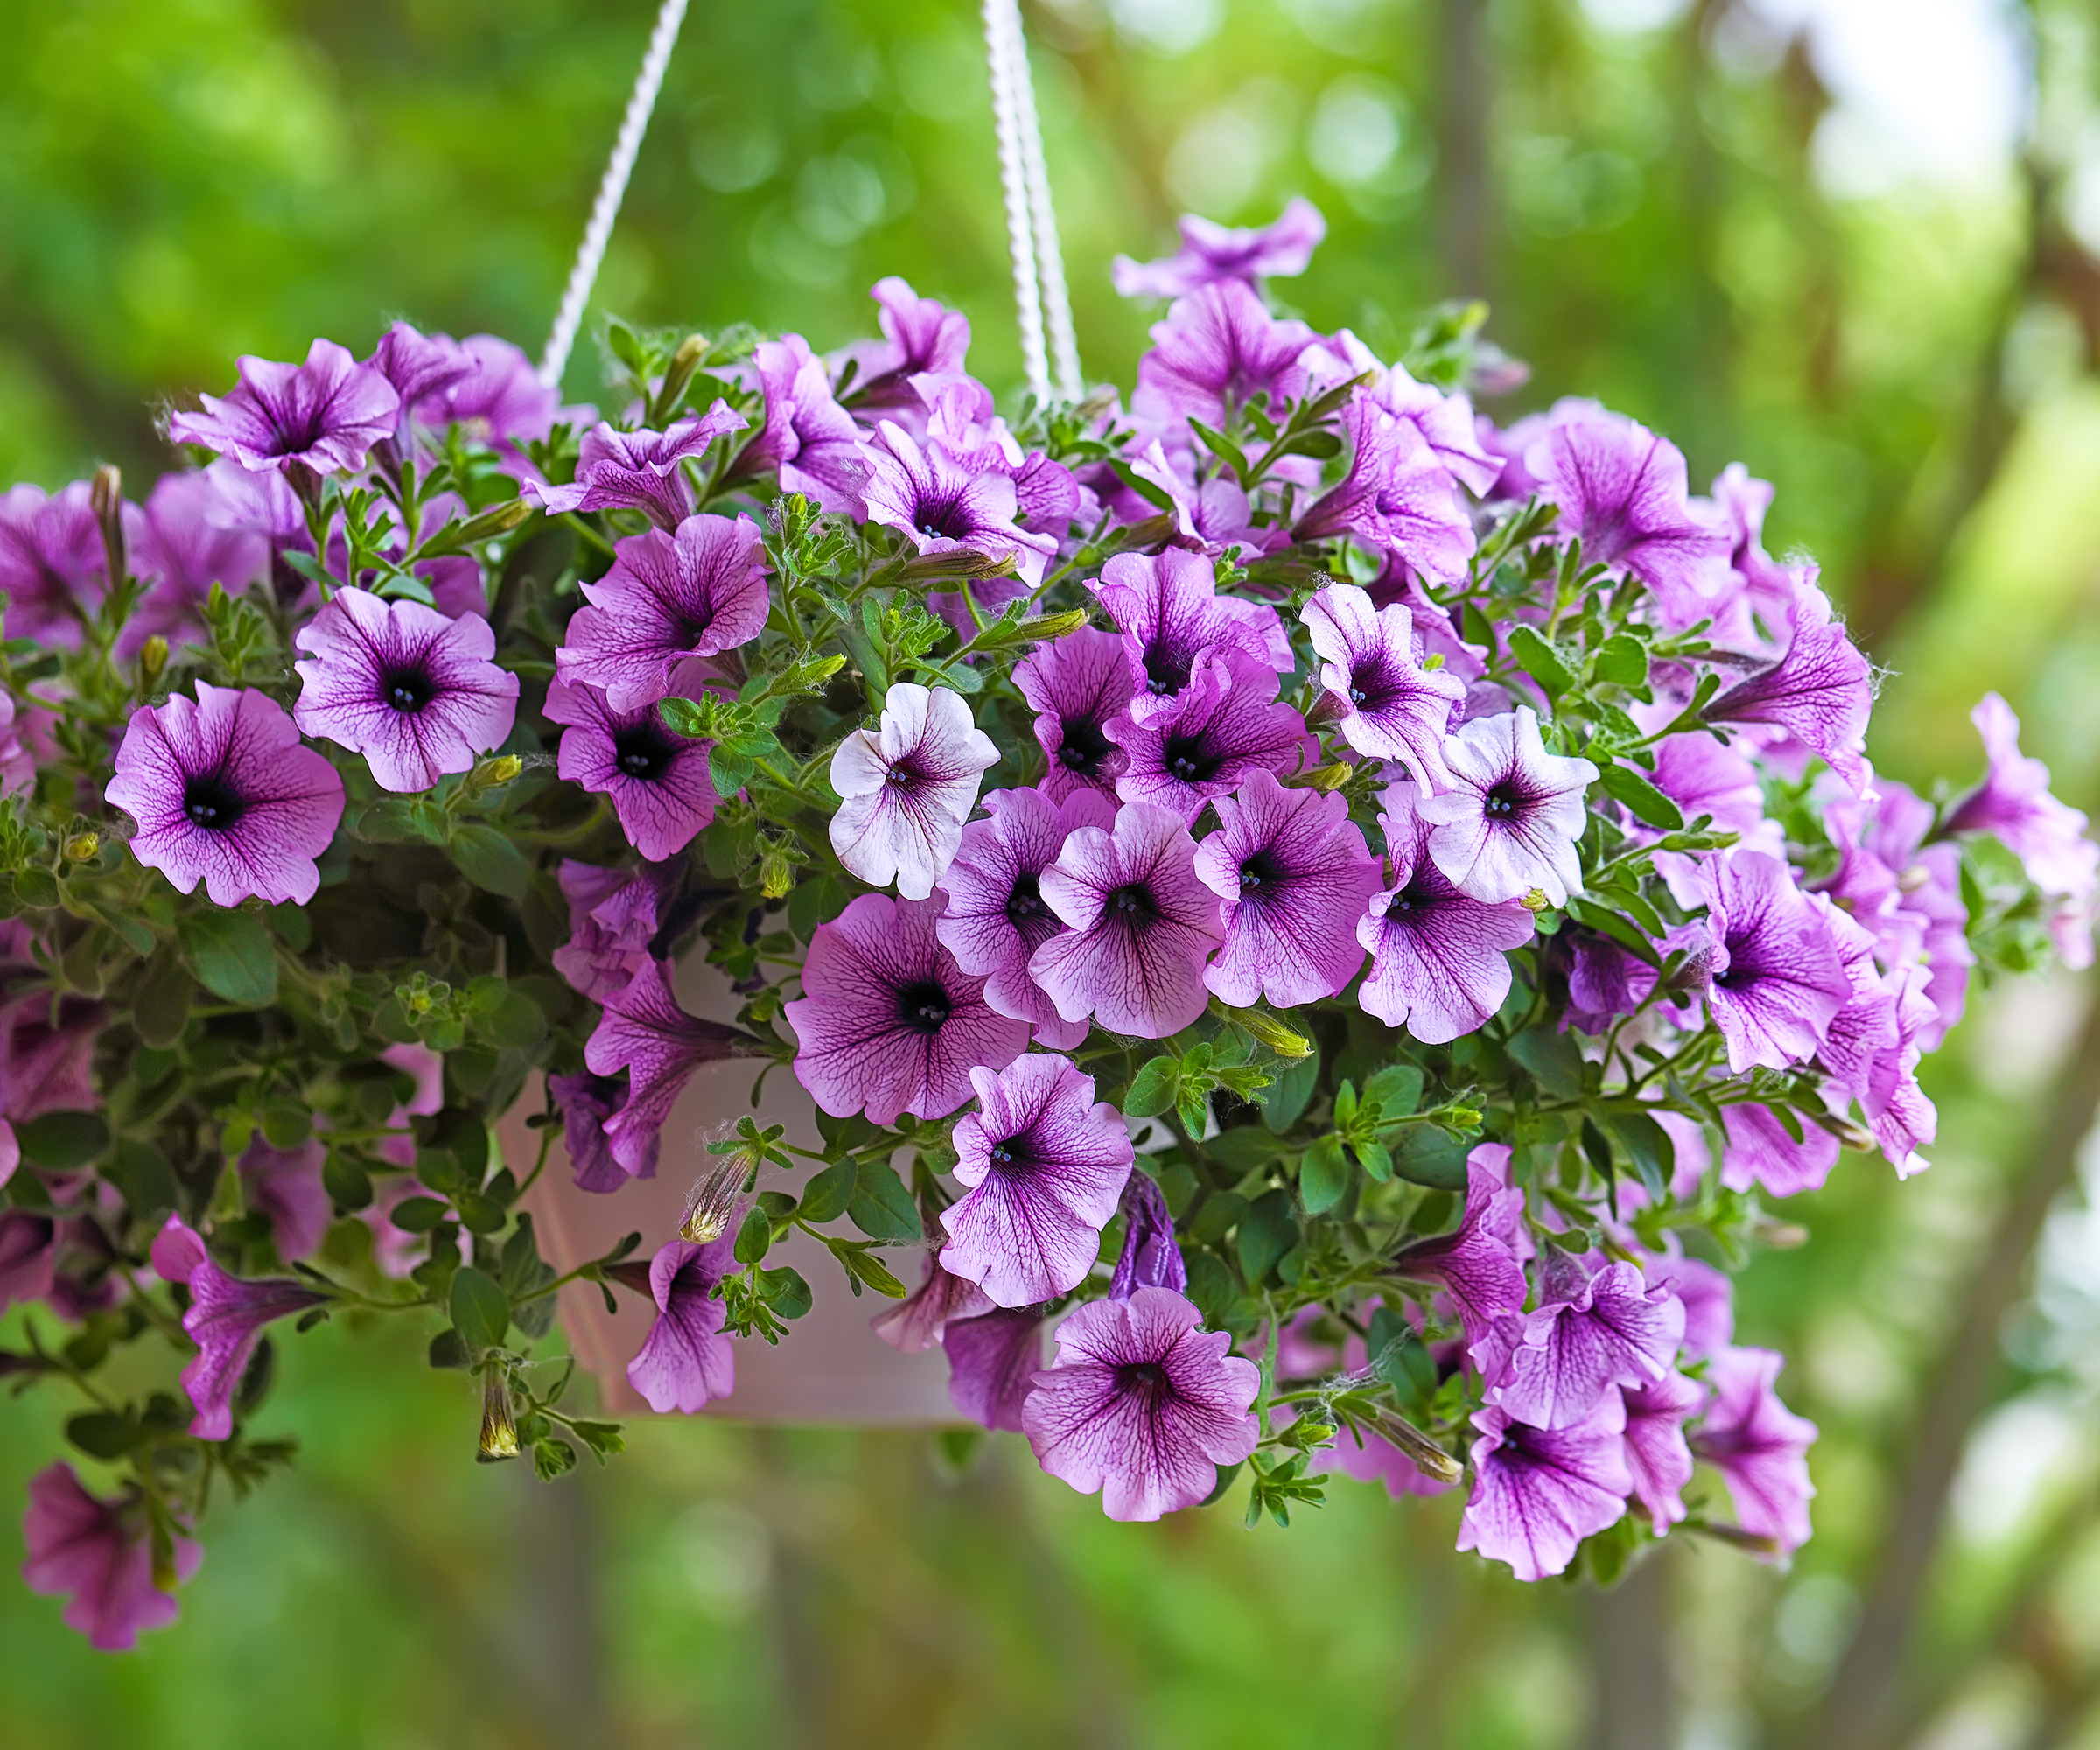 Purple petunia flowers in hanging basket